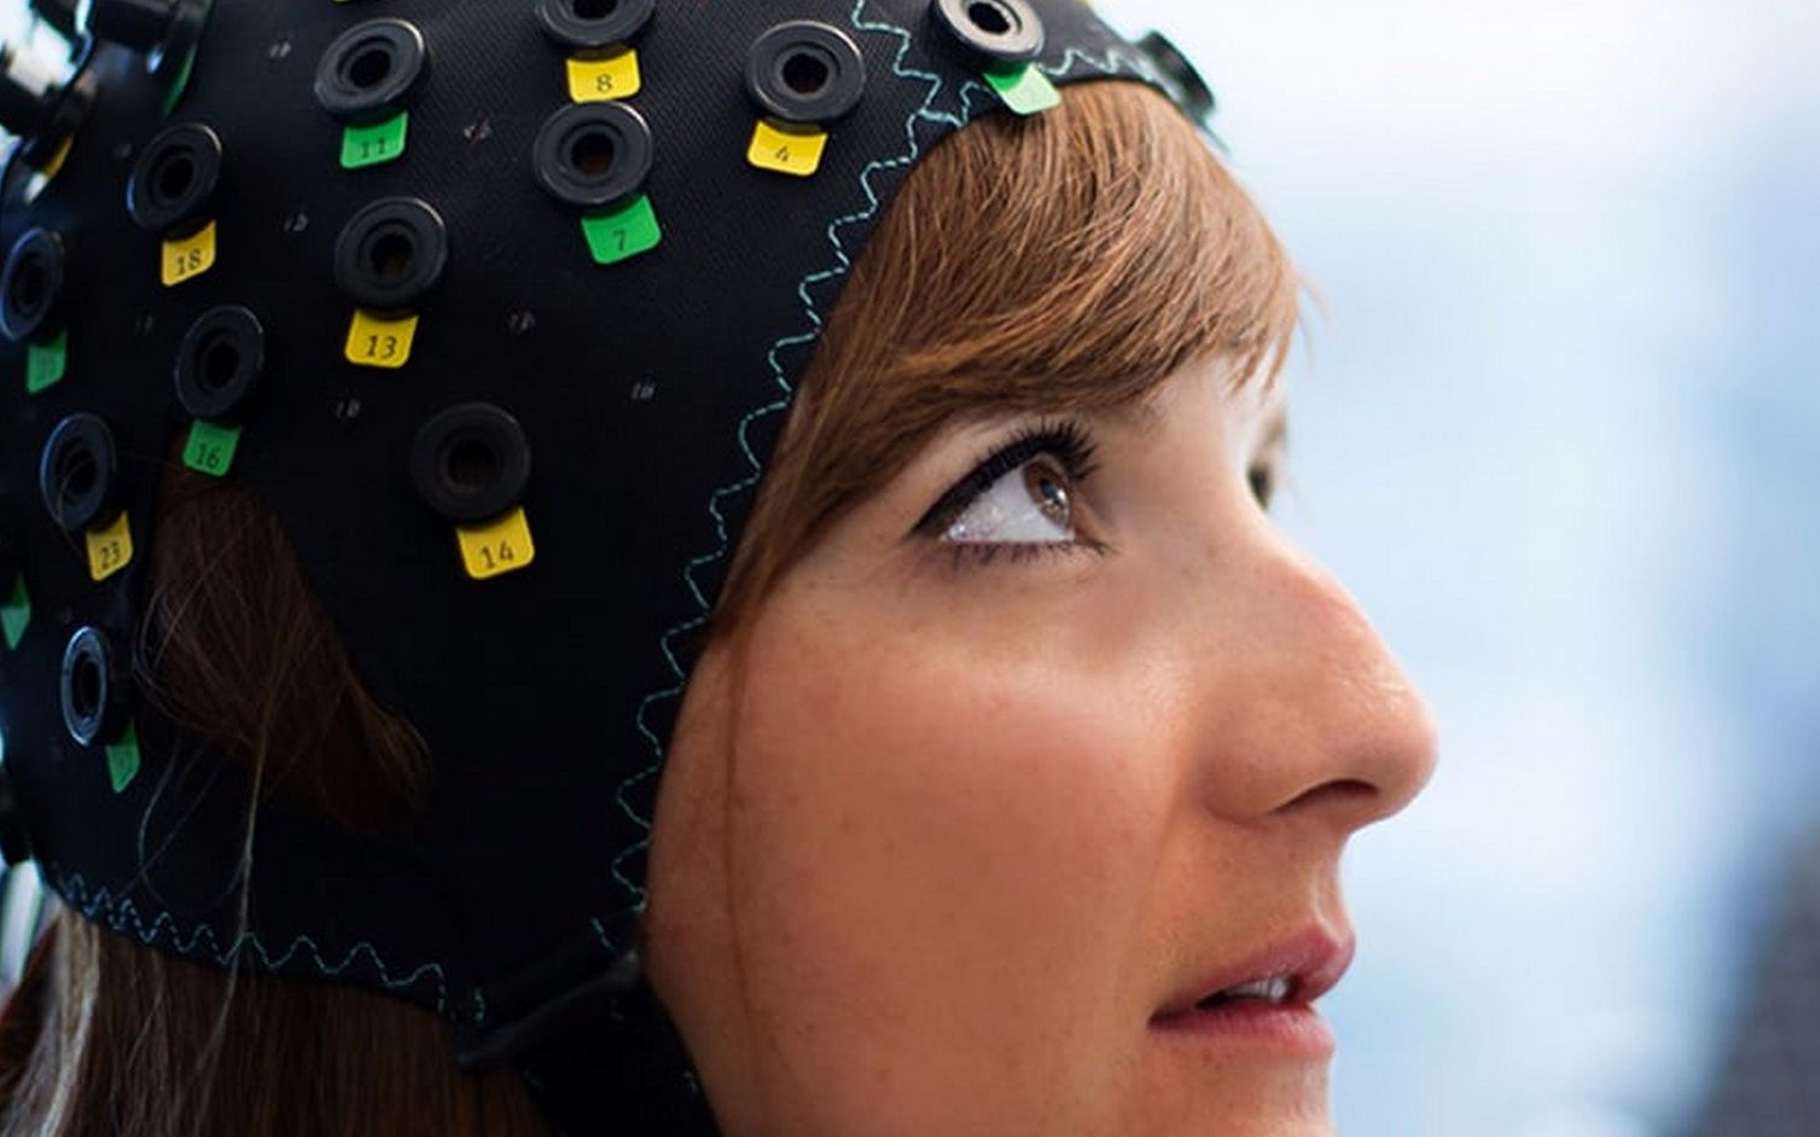 Des patients entièrement paralysés communiquent pour la première fois grâce à une interface neuronale